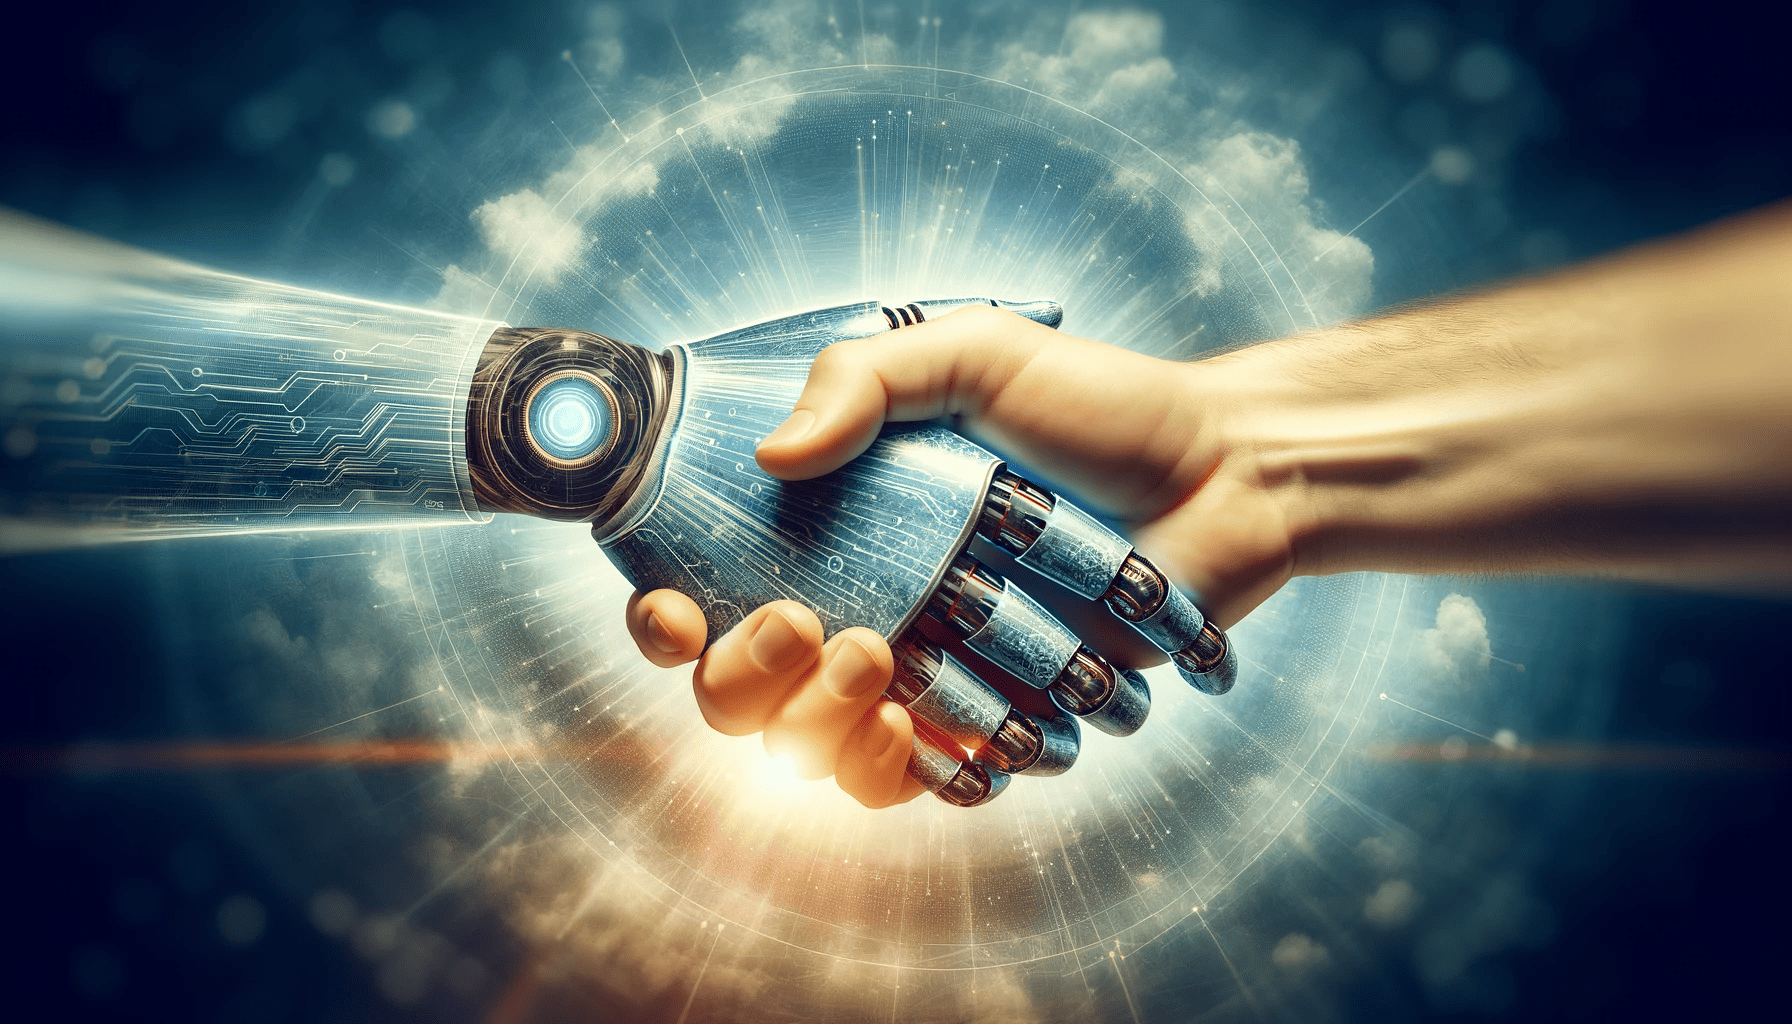 Une poignée de main symbolique entre une main humaine et une main robotique numérique représentant la collaboration entre l'homme et l'IA